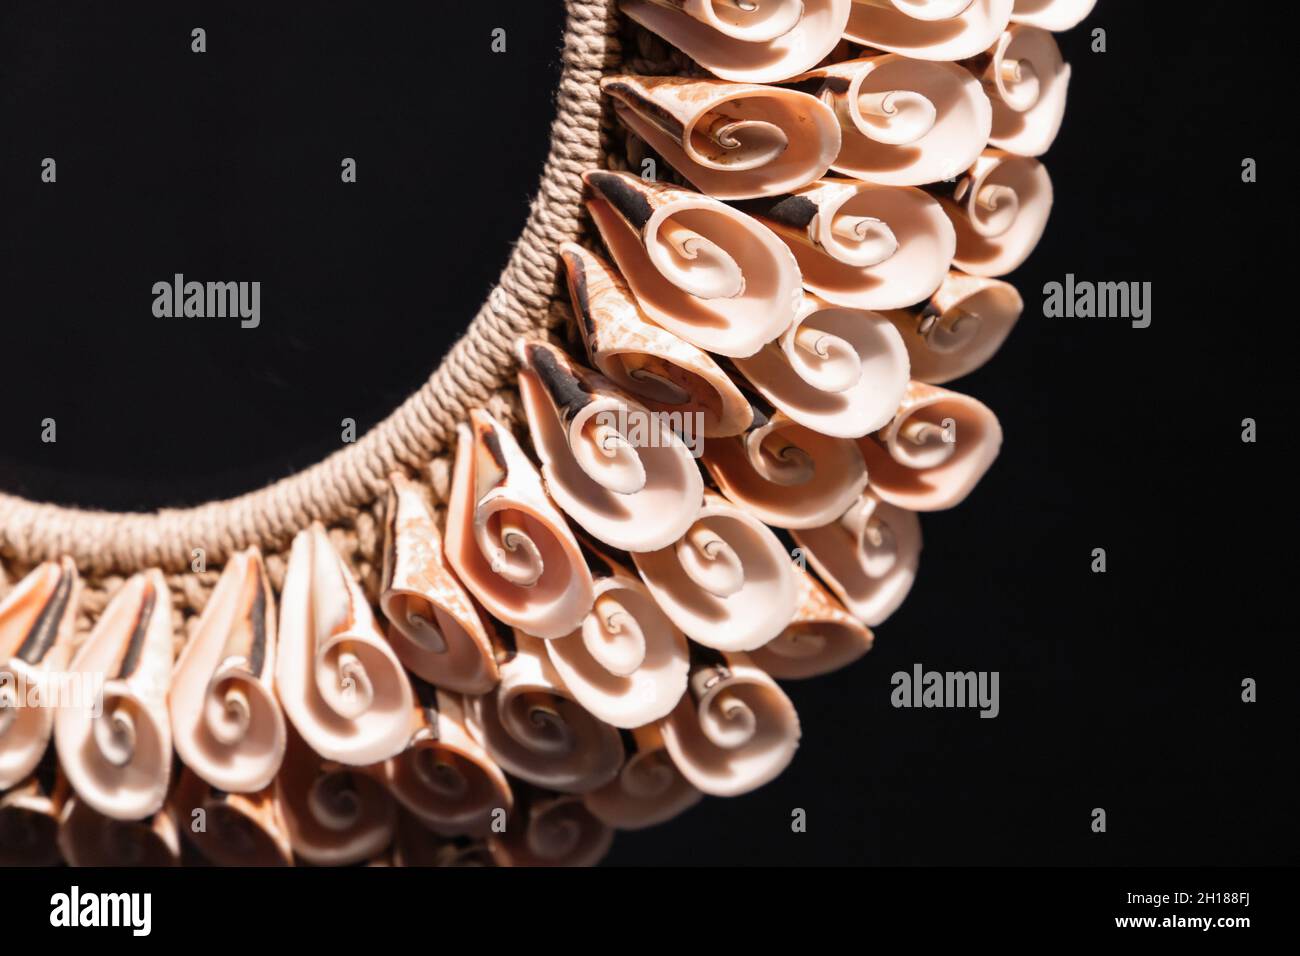 Collana fatta a mano fatta di conchiglie a spirale si stende su sfondo nero, prodotto artigianale tradizionale delle isole del sud-est asiatico Foto Stock